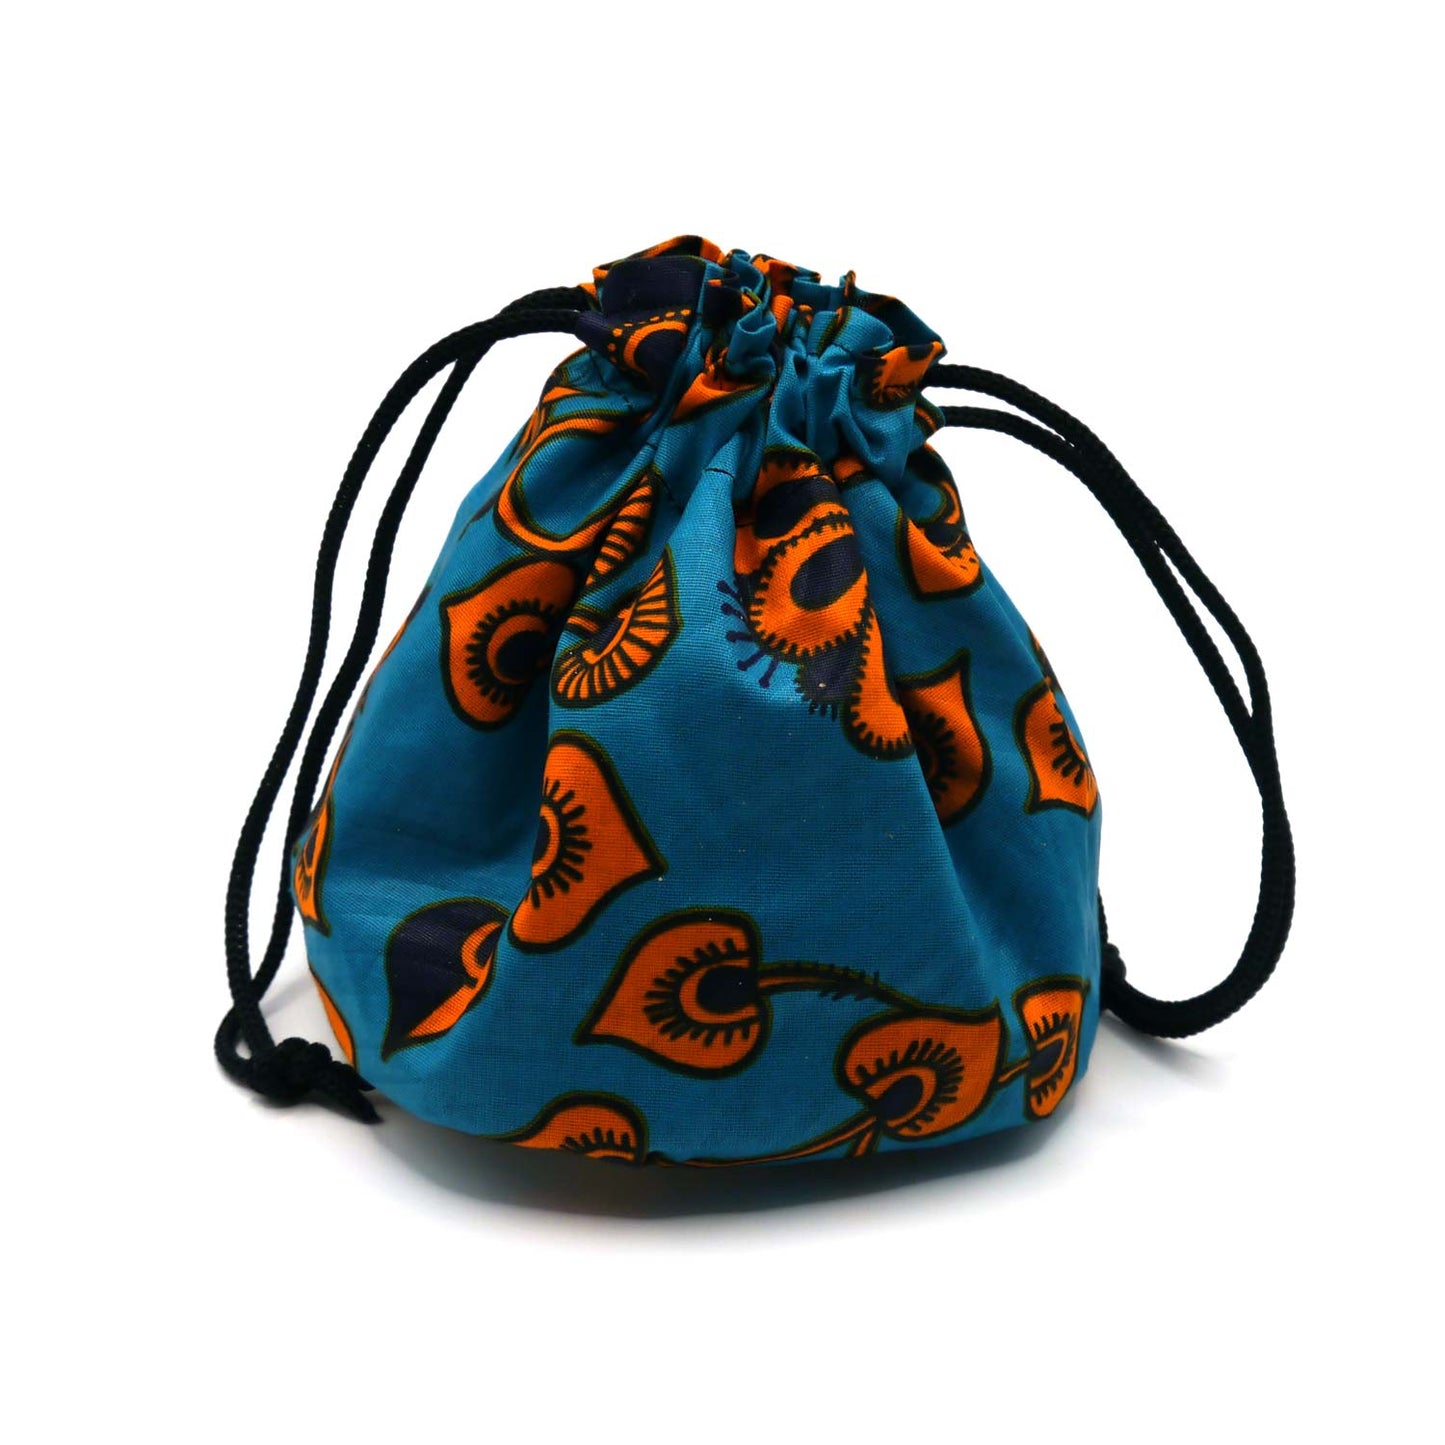 Würfelbeutel Blau-Orange von Lionbag